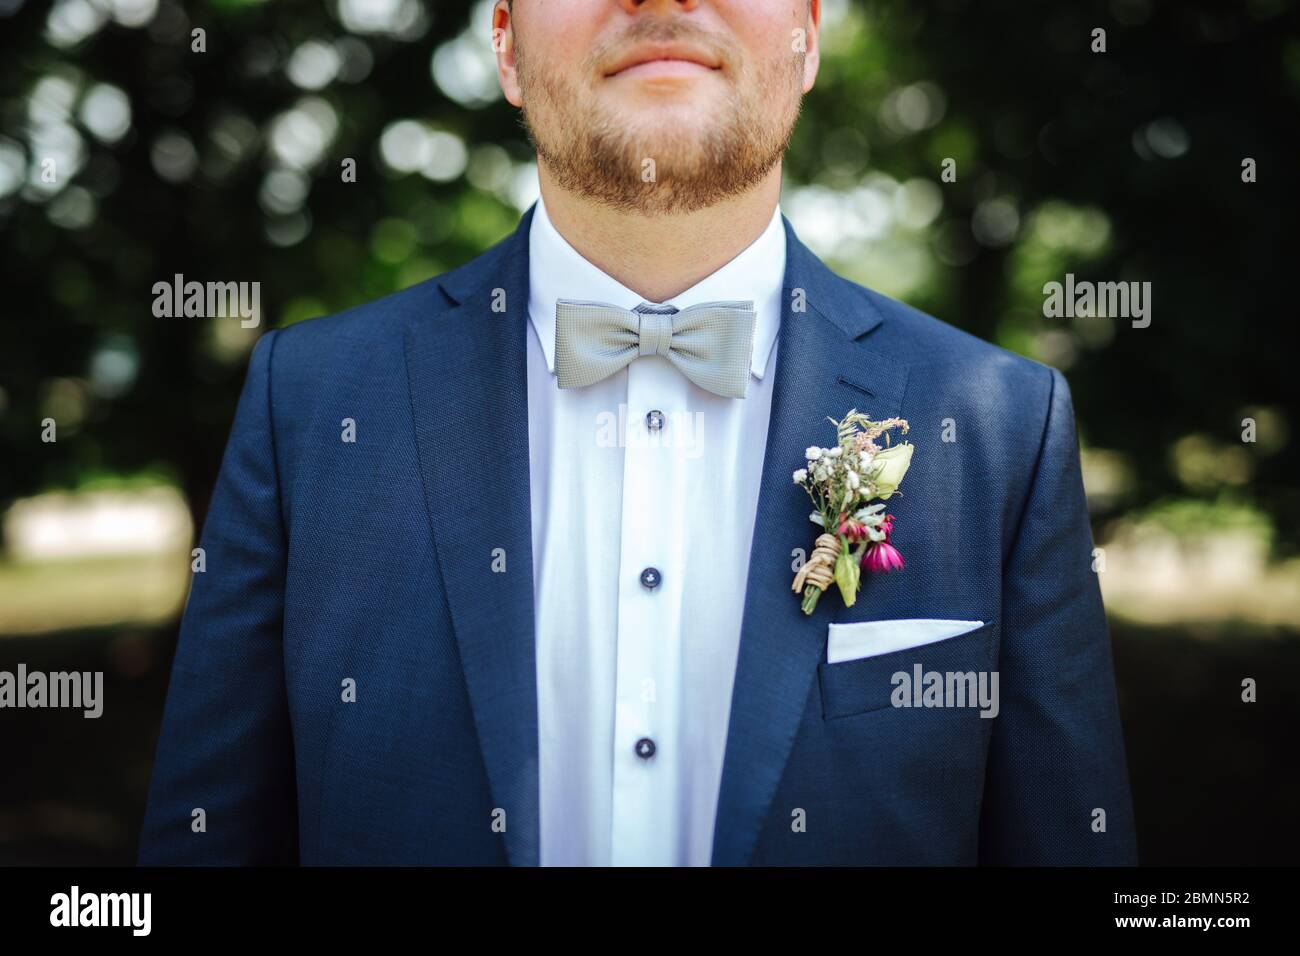 Bräutigam trägt eine Fliege bei einer Hochzeit Stockfotografie - Alamy